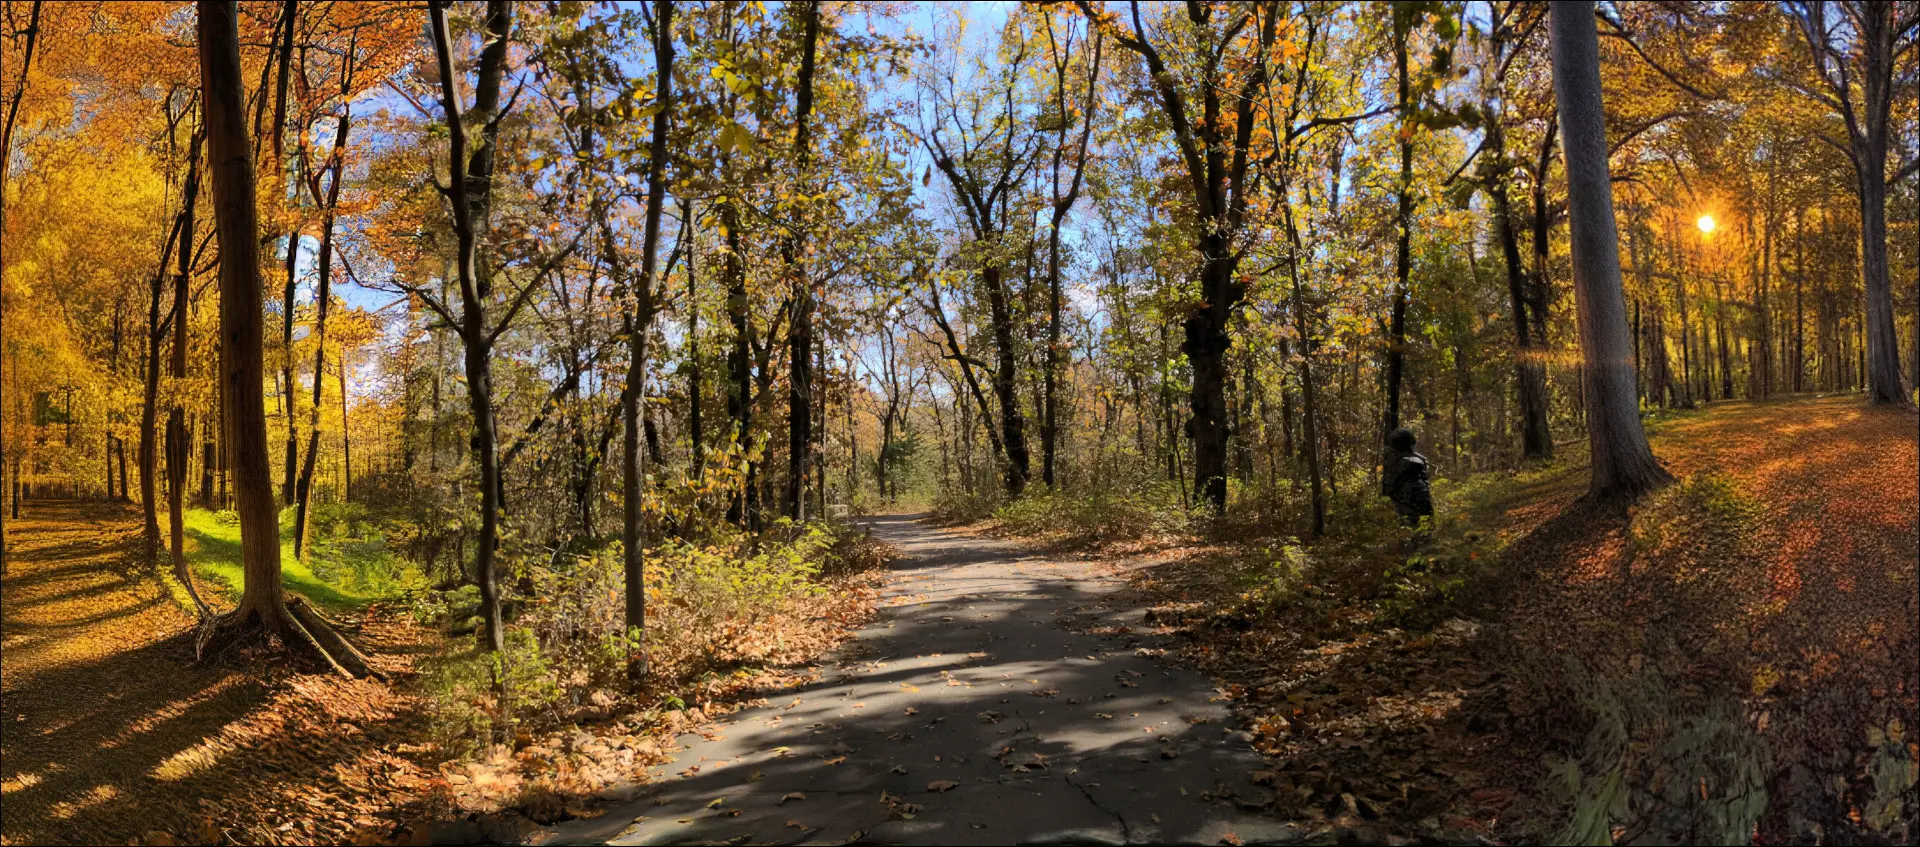 Kararlı Difüzyon kullanılarak oluşturulmuş, sol ve sağ tarafları olan sonbaharda bir yürüyüş yolunun üst ölçekli fotoğrafı.